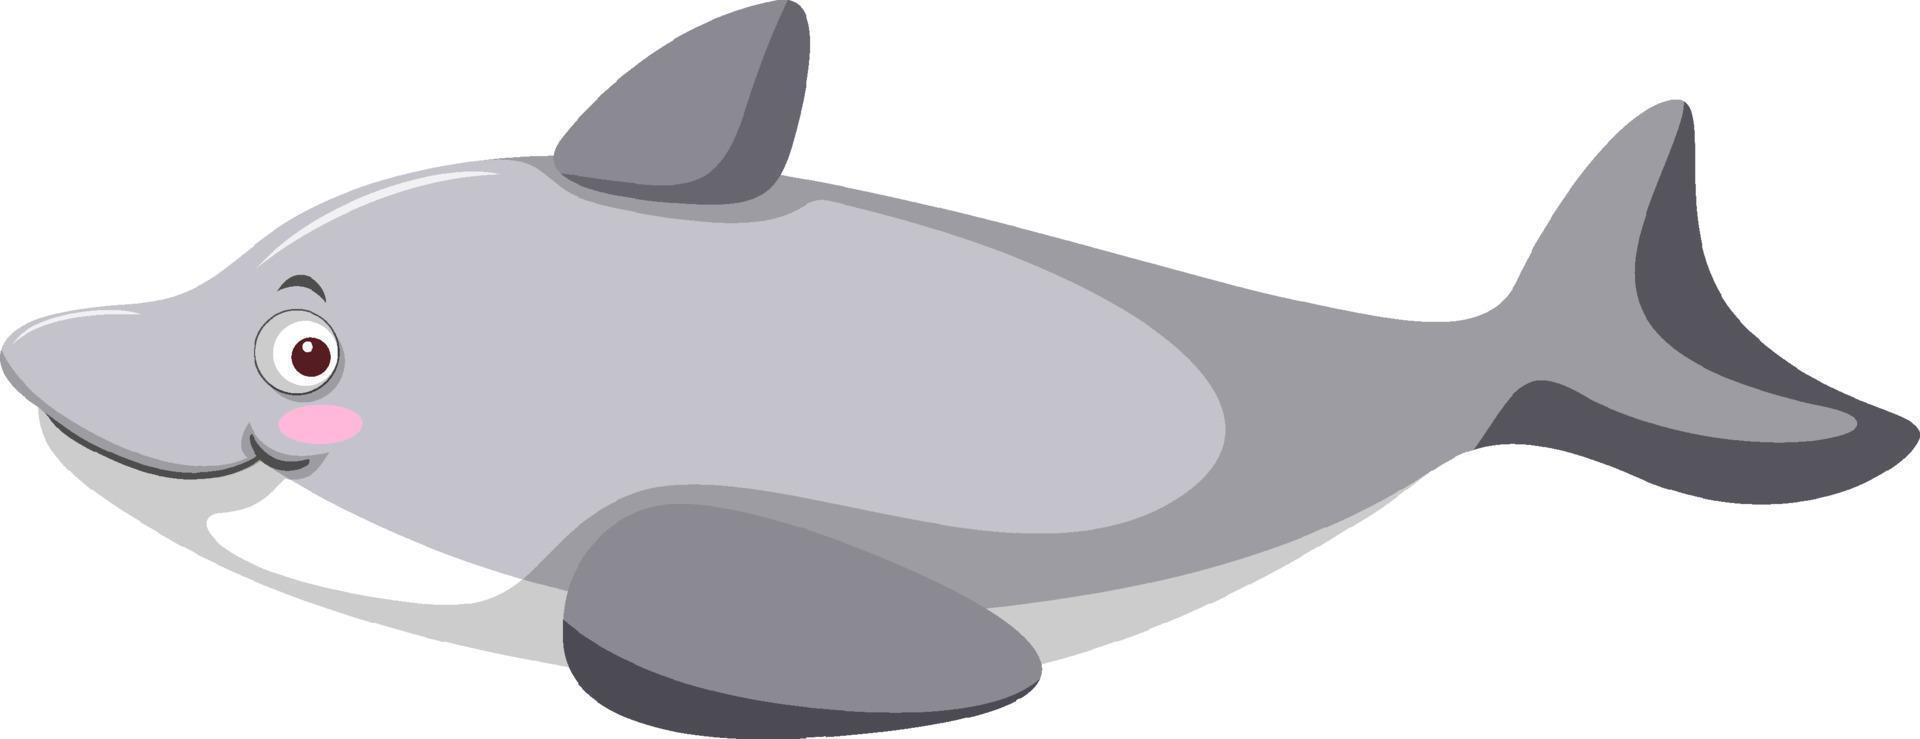 grijze dolfijn in cartoonstijl vector